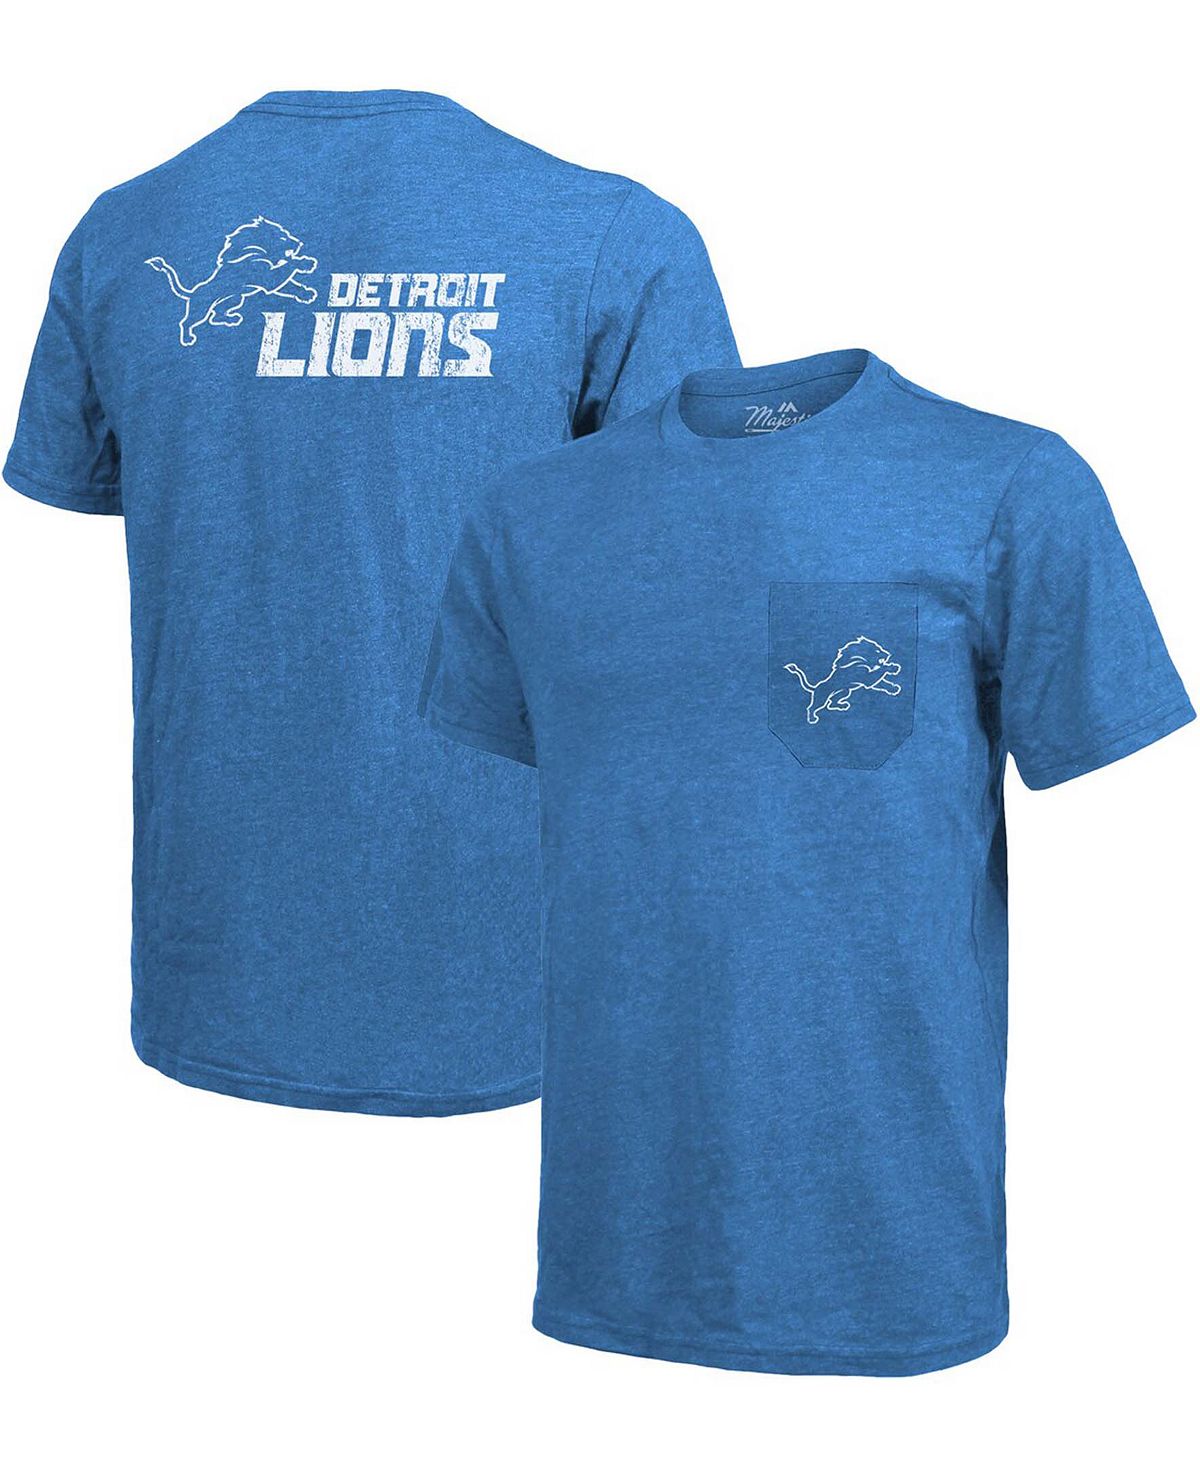 Футболка detroit lions tri-blend pocket - синий Majestic, синий черная футболка с принтом tri blend pocket atlanta falcons majestic черный